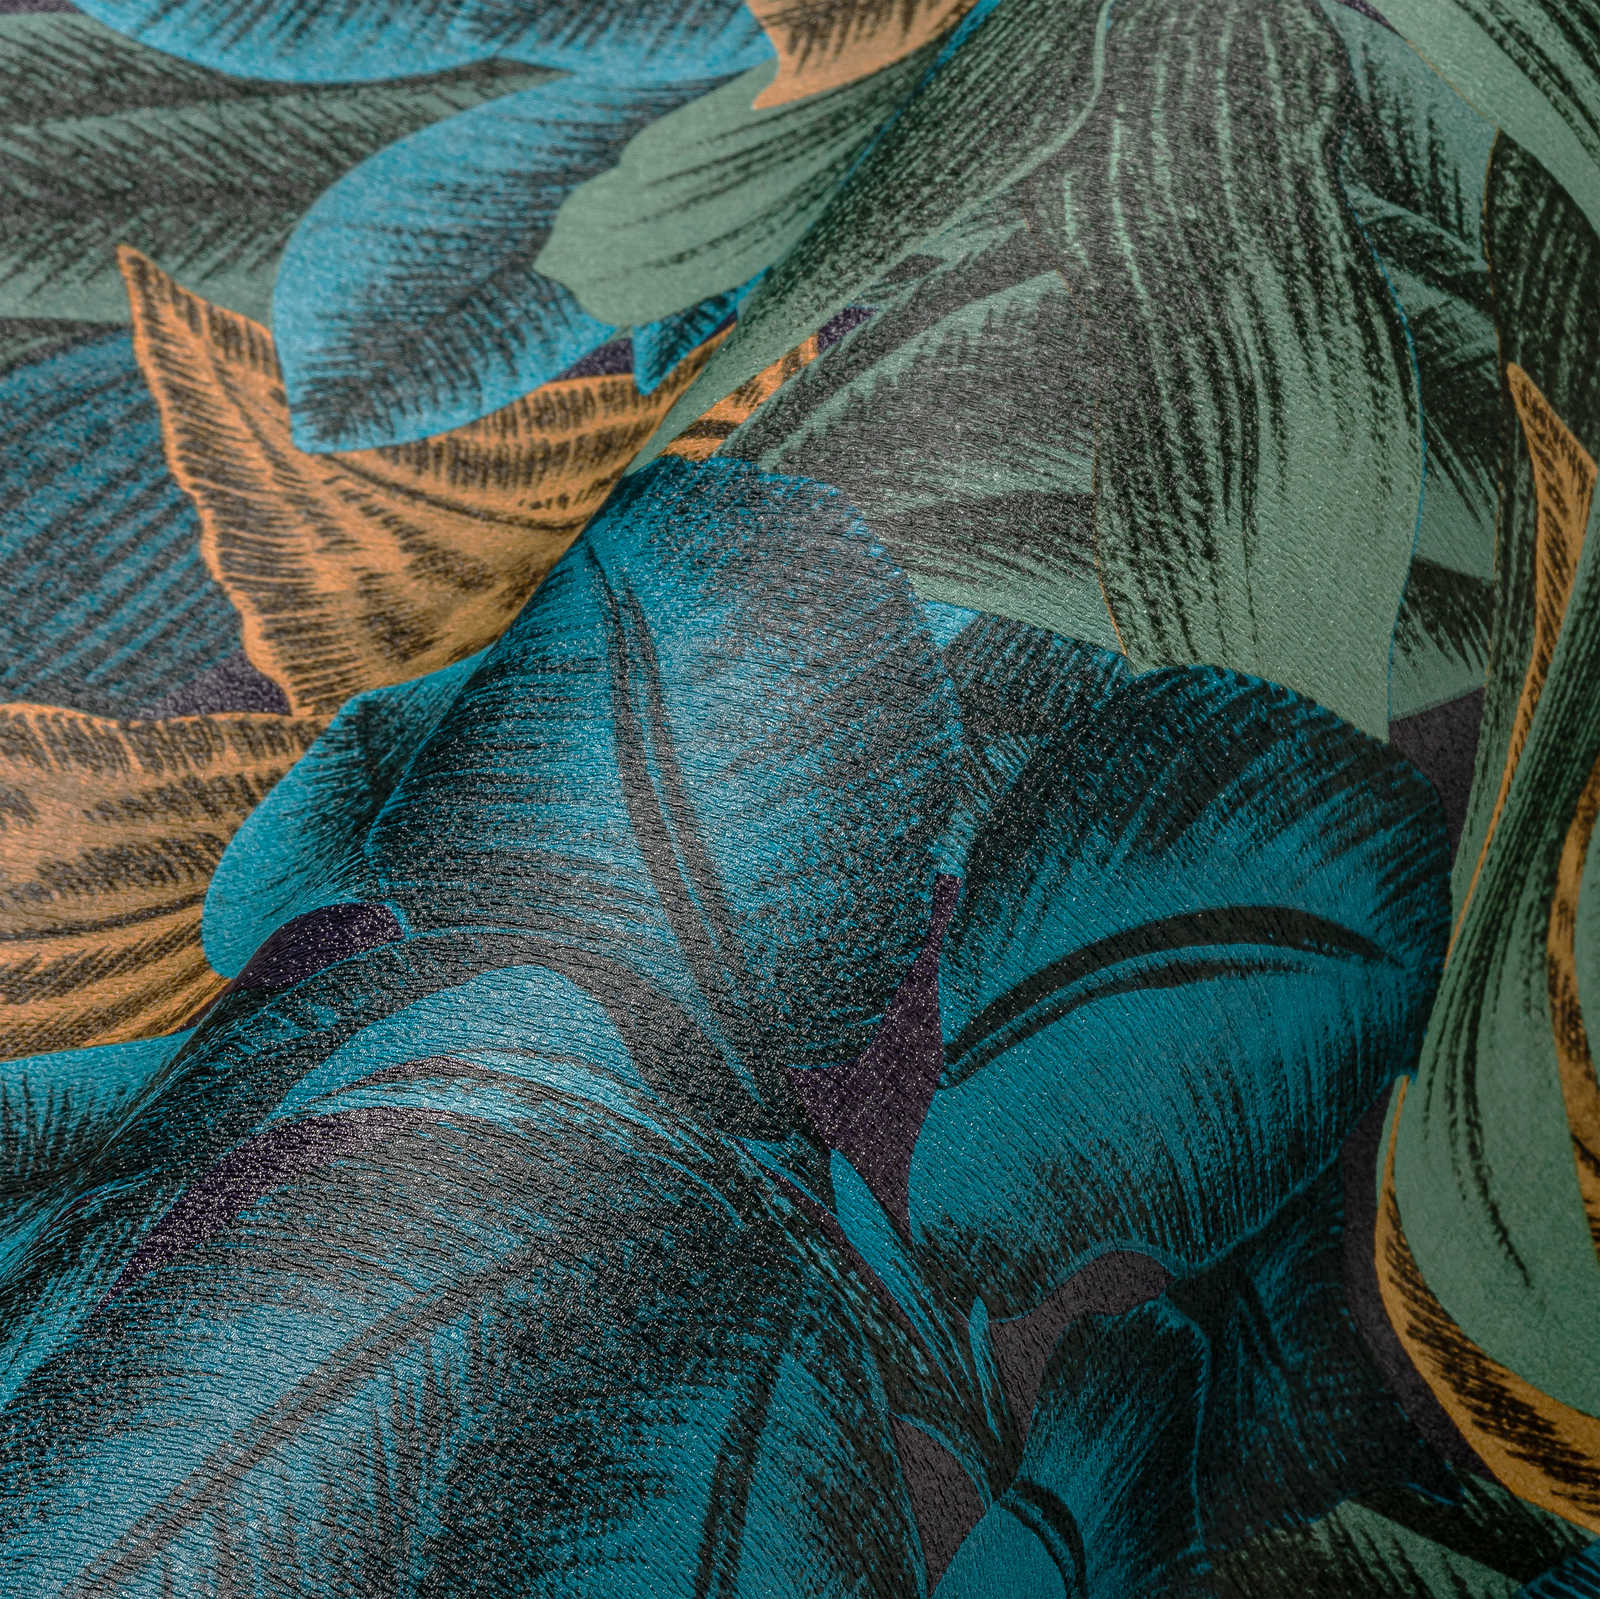             Gebloemd vliesbehang met jungle bladmotief - blauw, oranje, paars
        